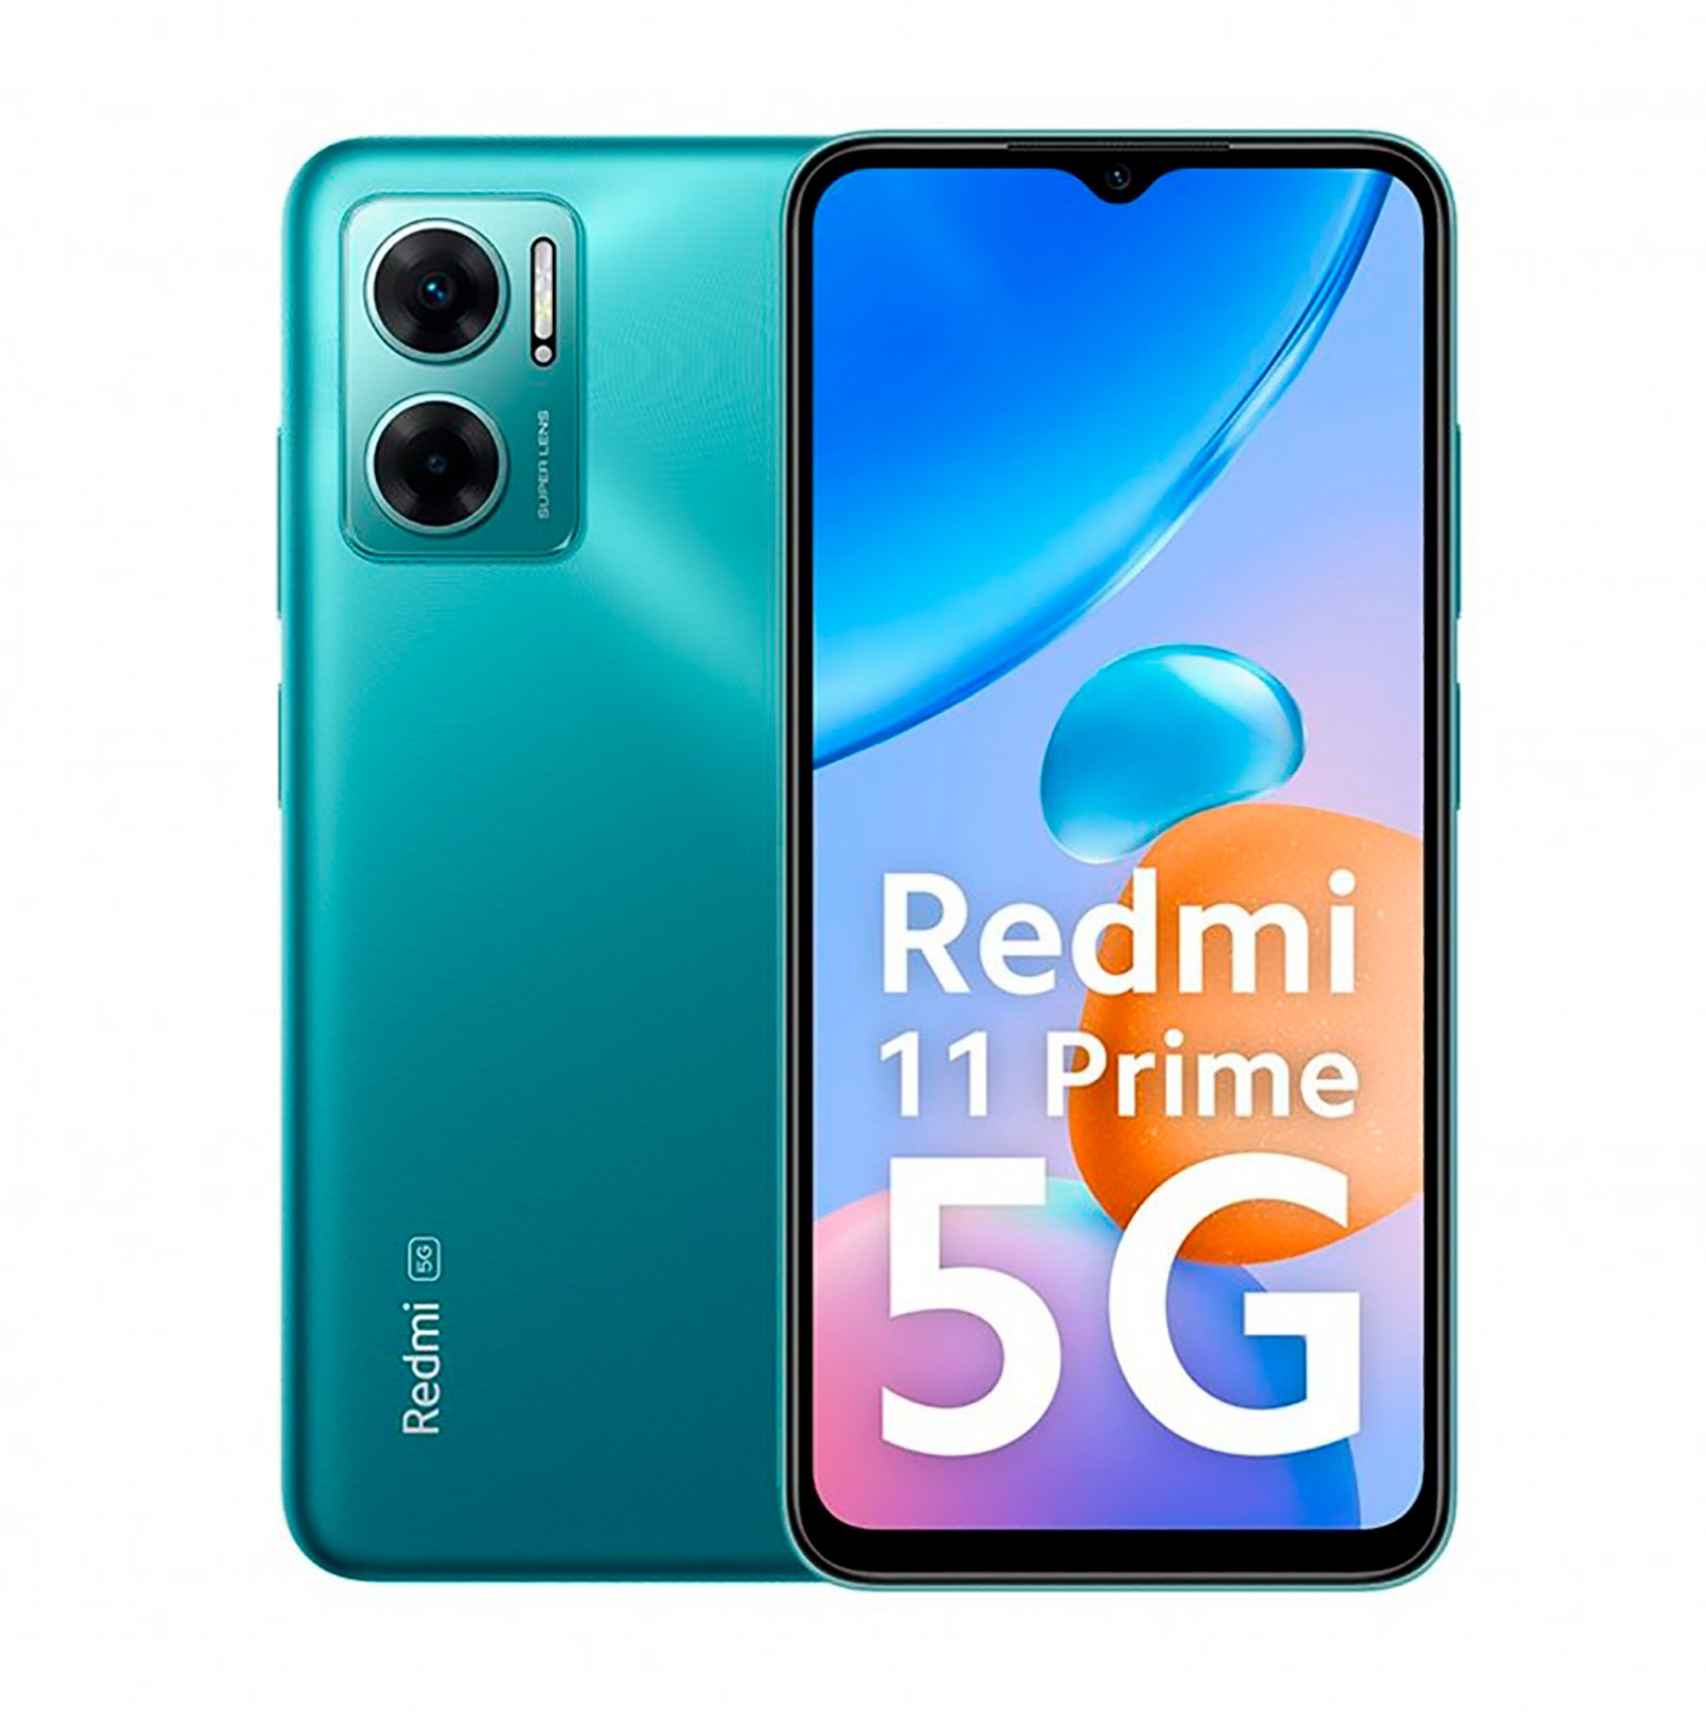 Redmi 11 Prime 5G